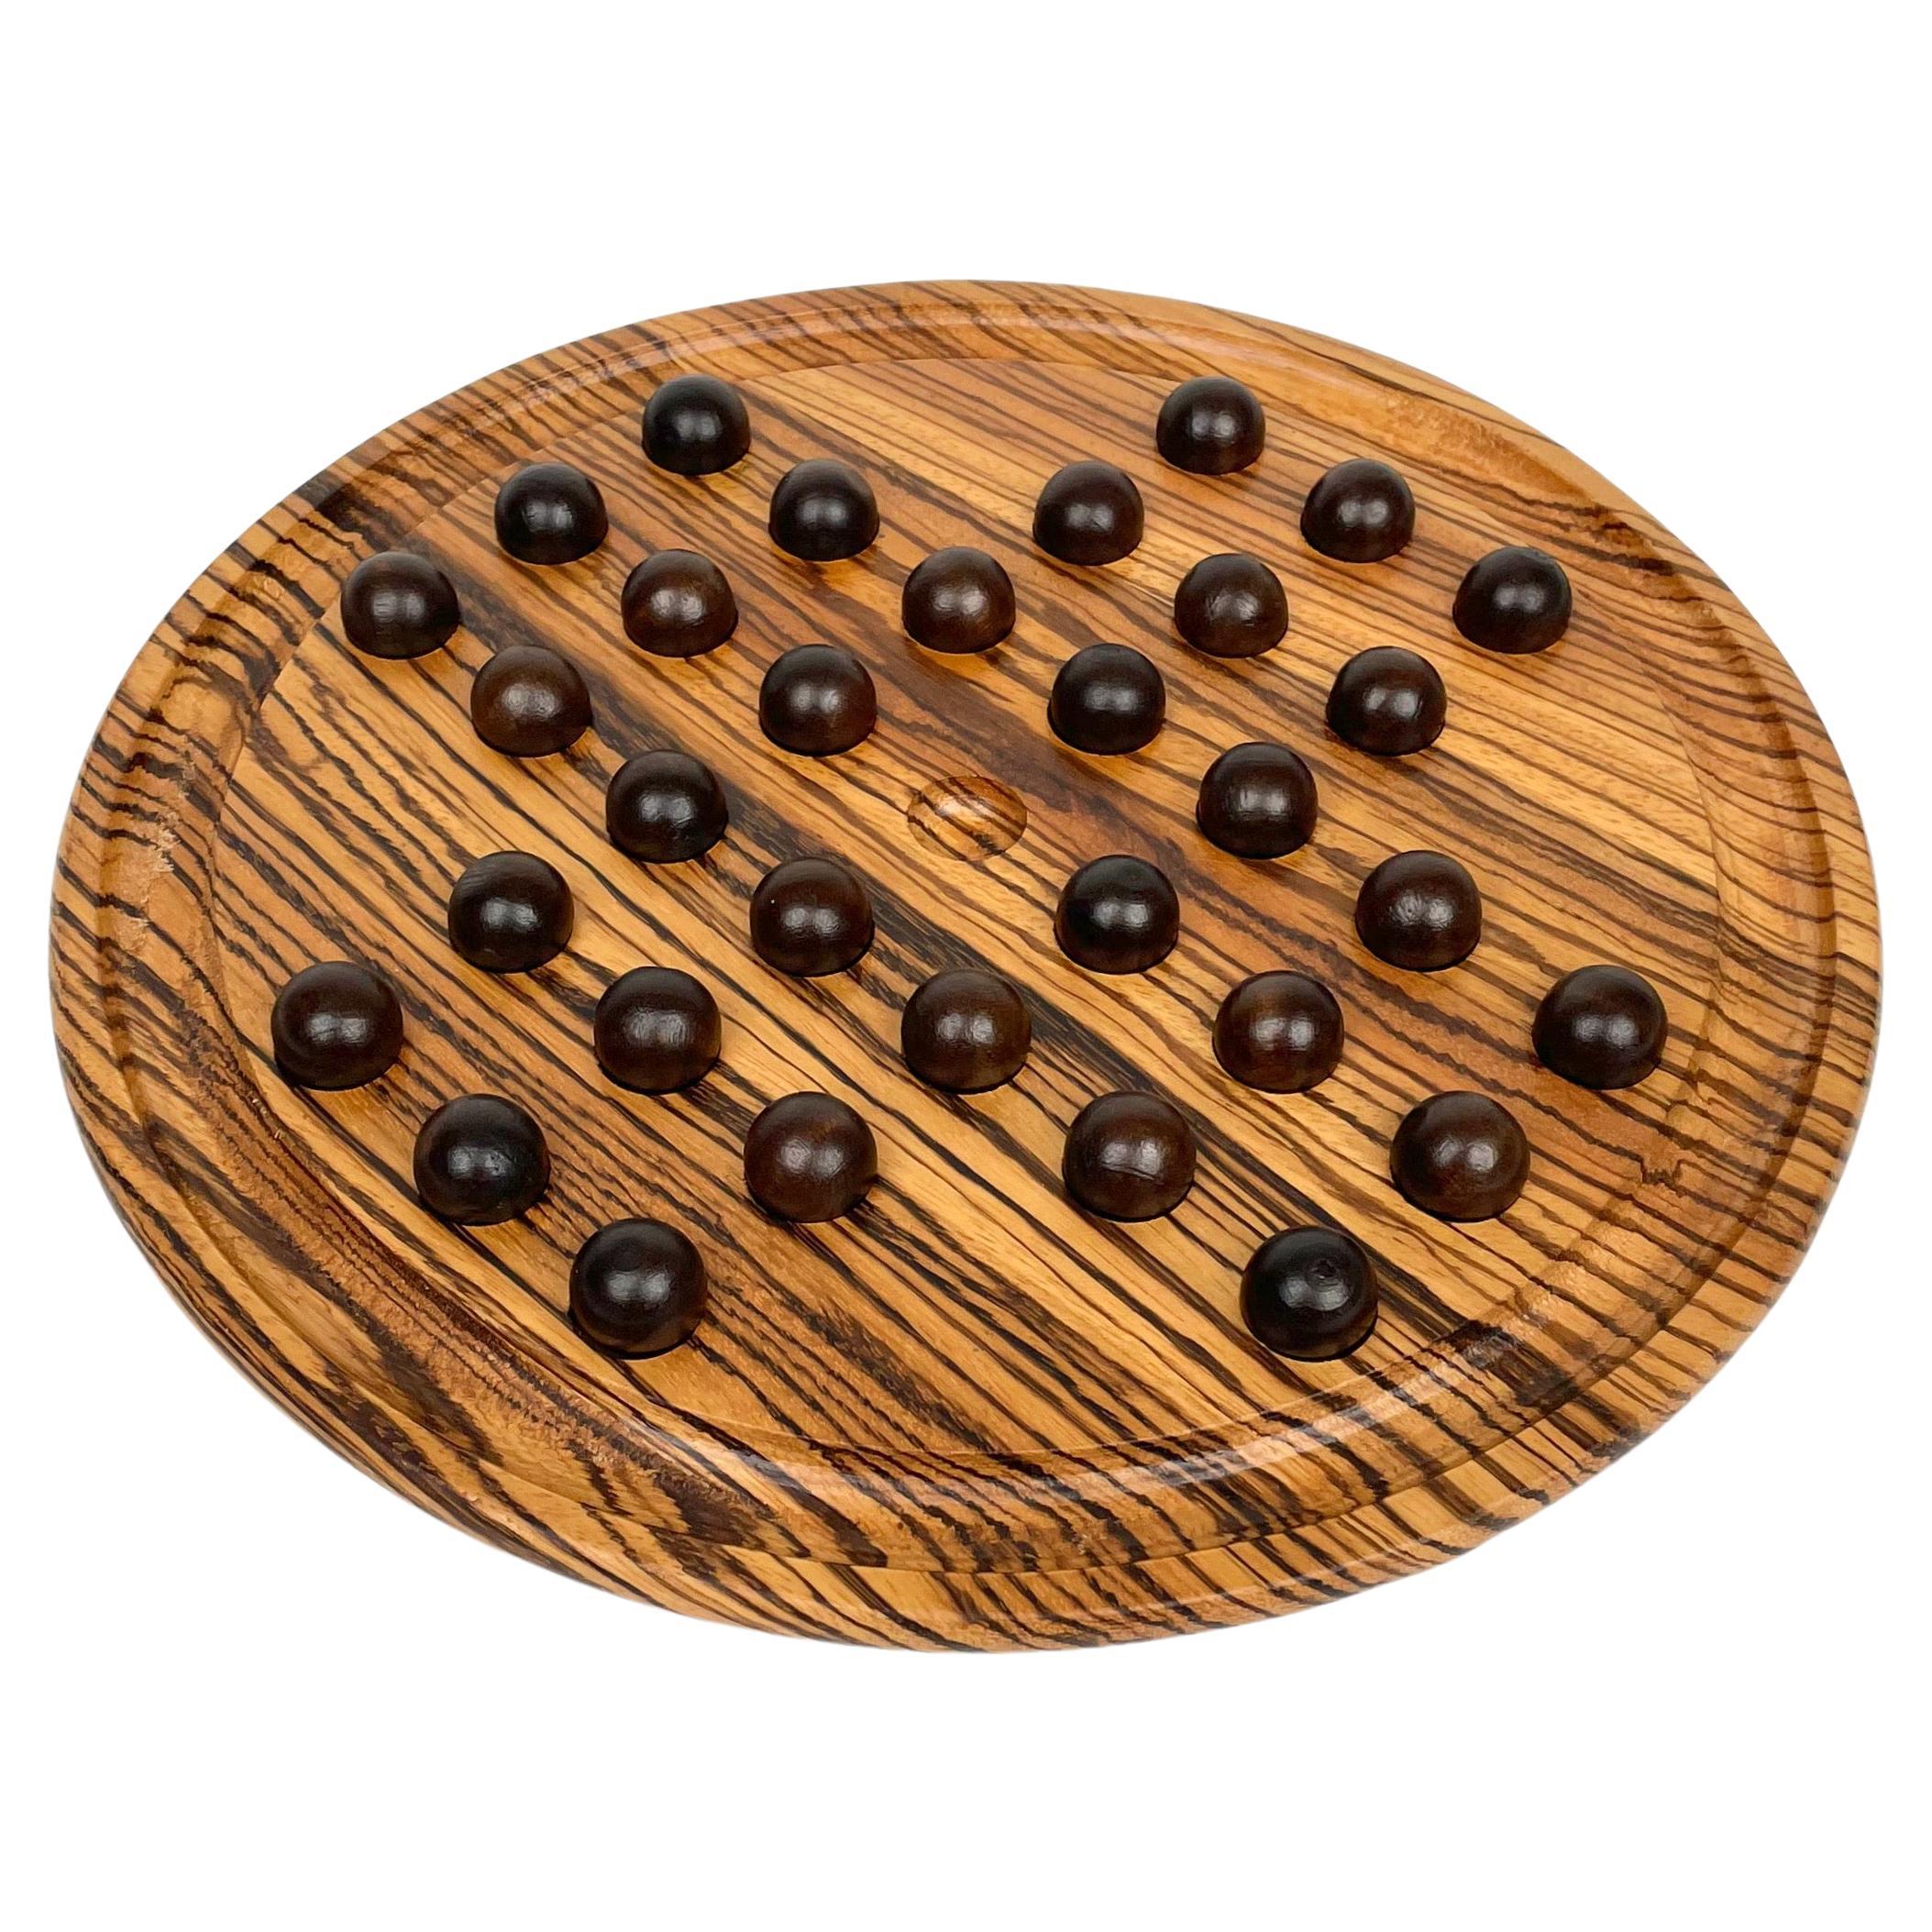 Checkers-Spiel „Der Solitär“ aus Holz von Artek, Italien, 1970er Jahre